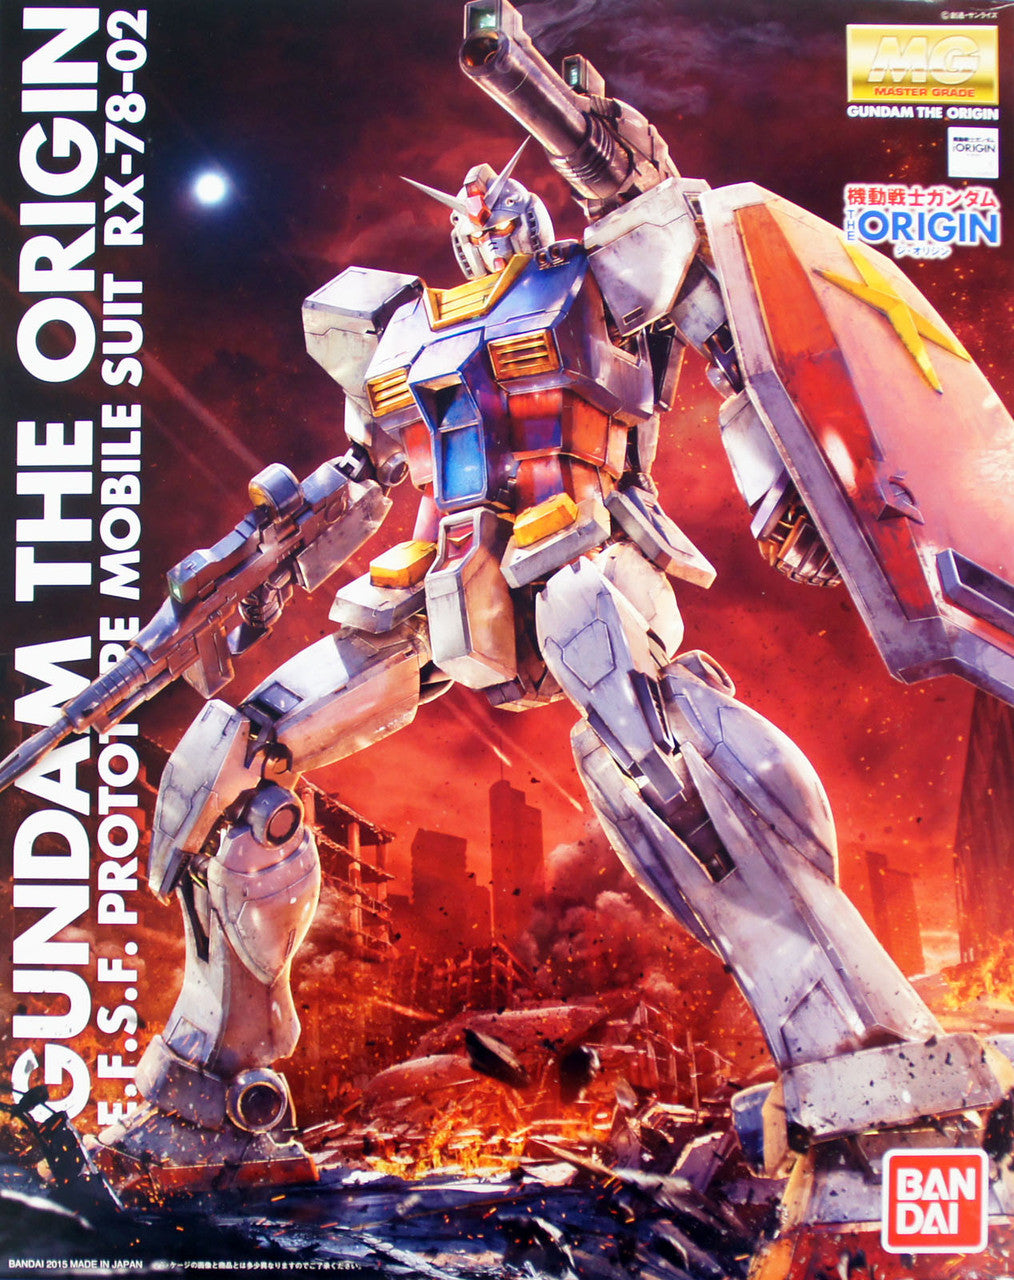 Bandai Master Grade (MG) RX-78-02 Gundam The Origin E.F.S.F. Prototype Mobile Suit